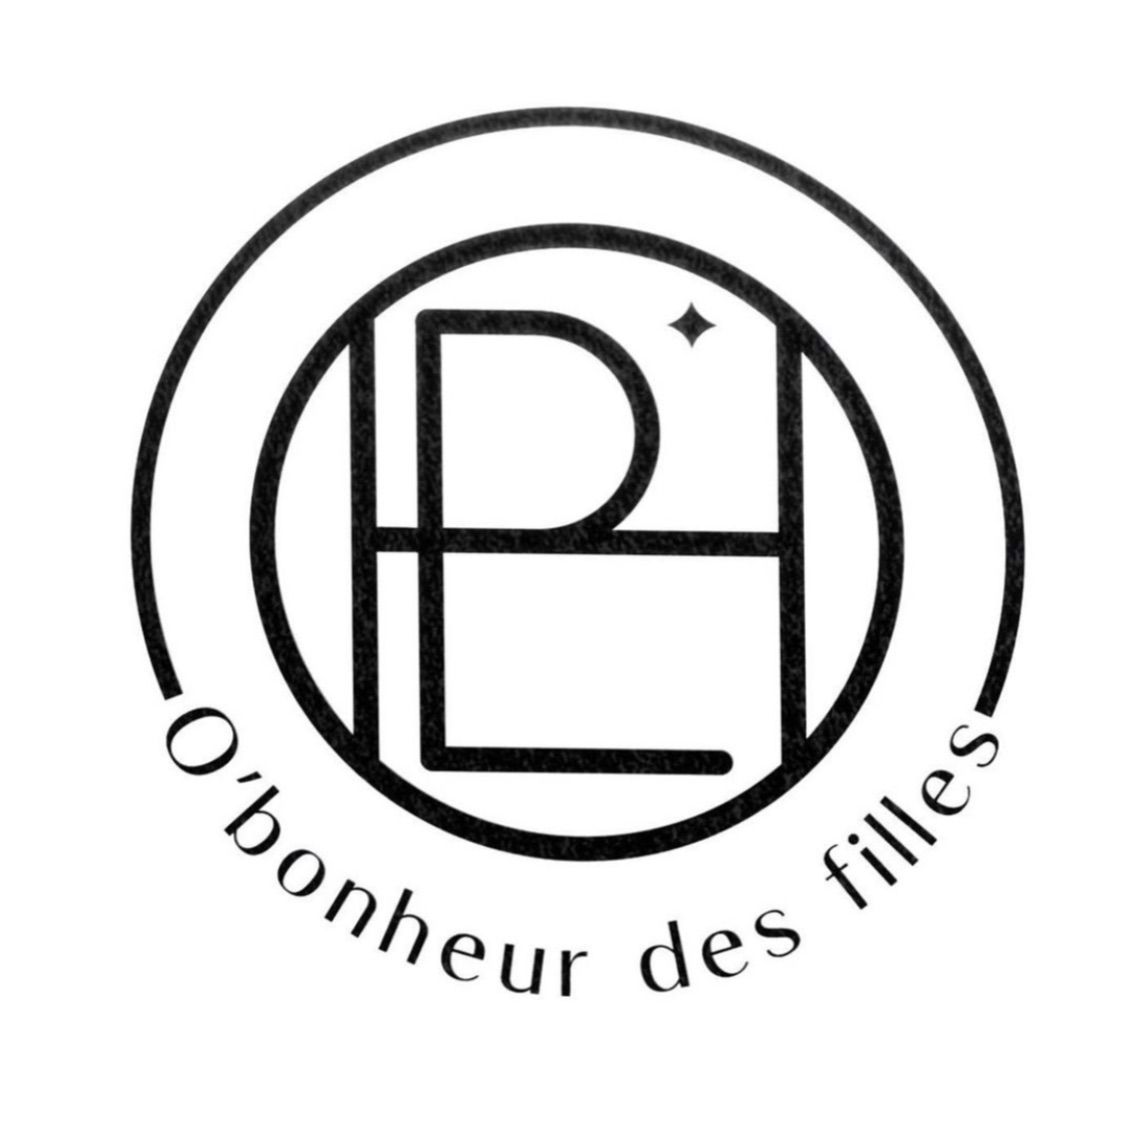 O'Bonheur des filles, 58 Rue Victor Clairet, Salon de coiffure l'atelier d'eline, 77910, Varreddes